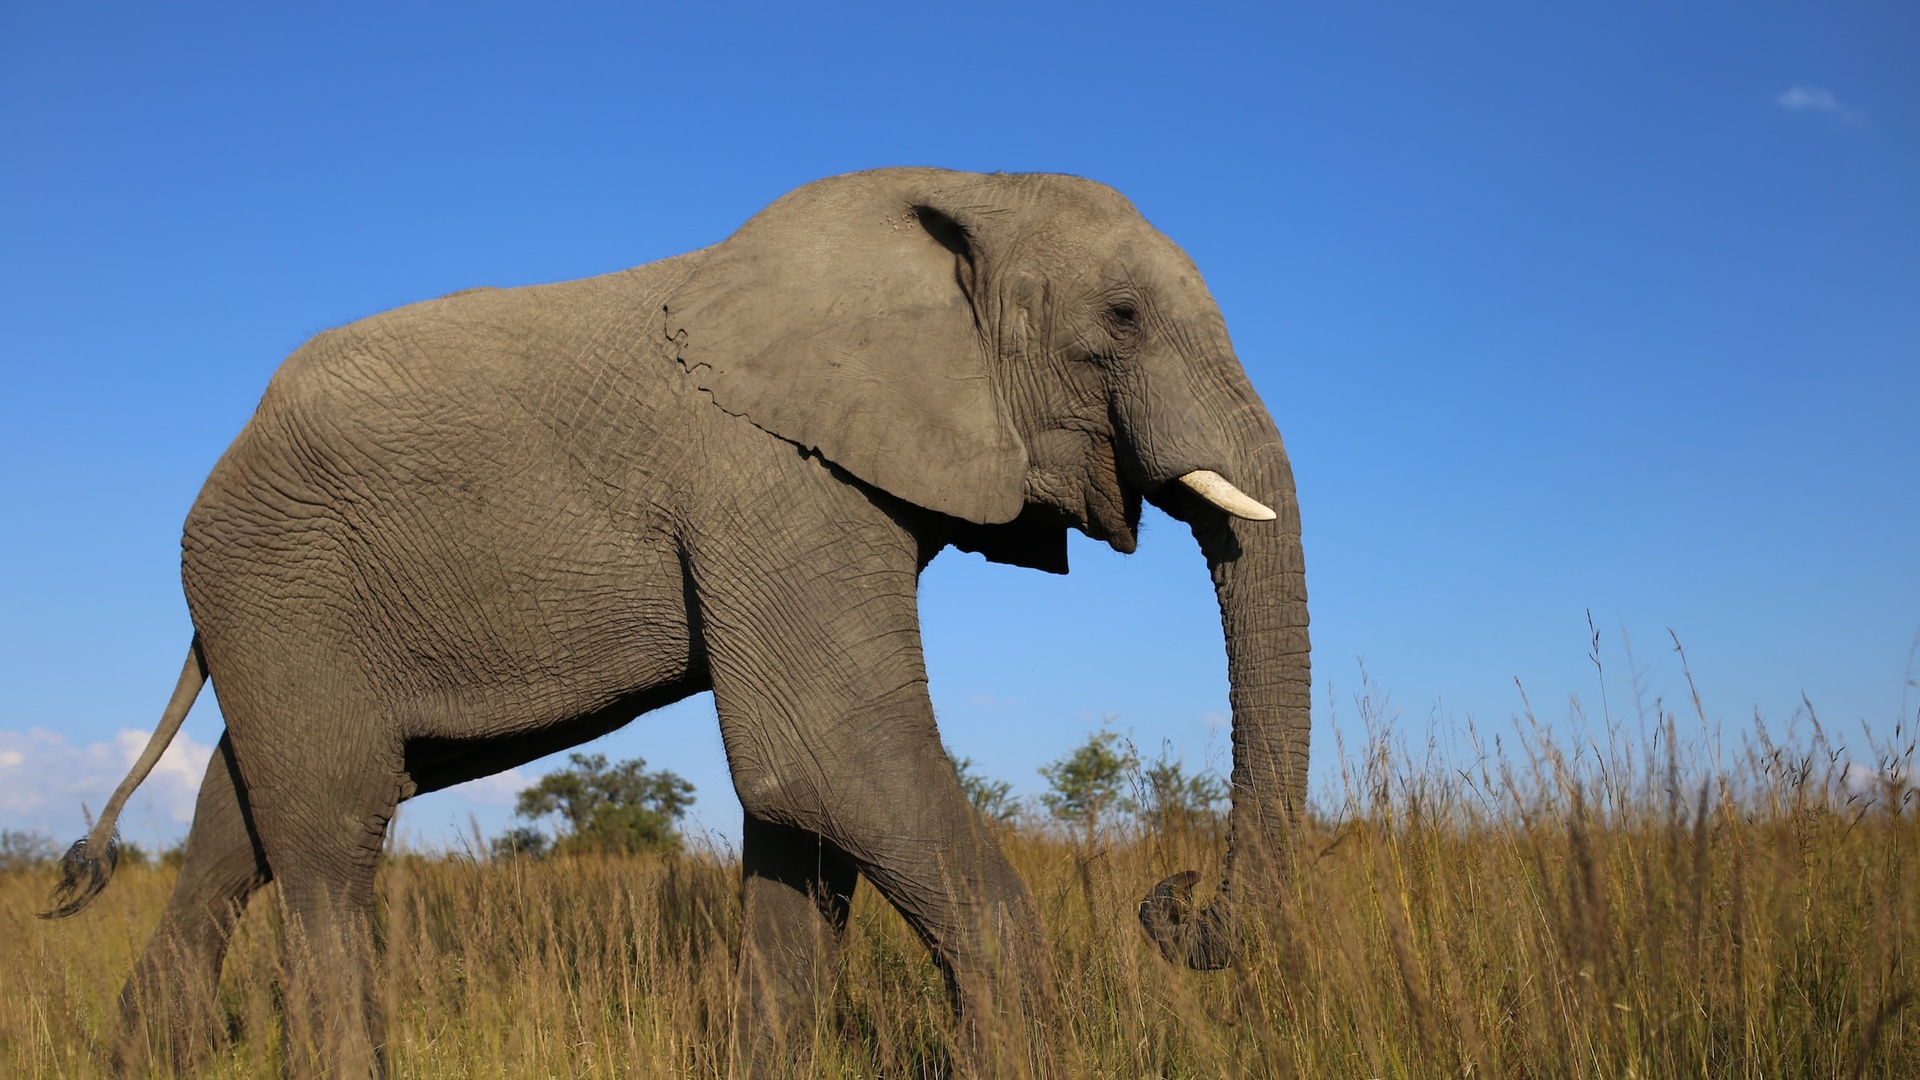 大象 非洲象 公路 行走 4K壁纸壁纸(动物静态壁纸) - 静态壁纸下载 - 元气壁纸